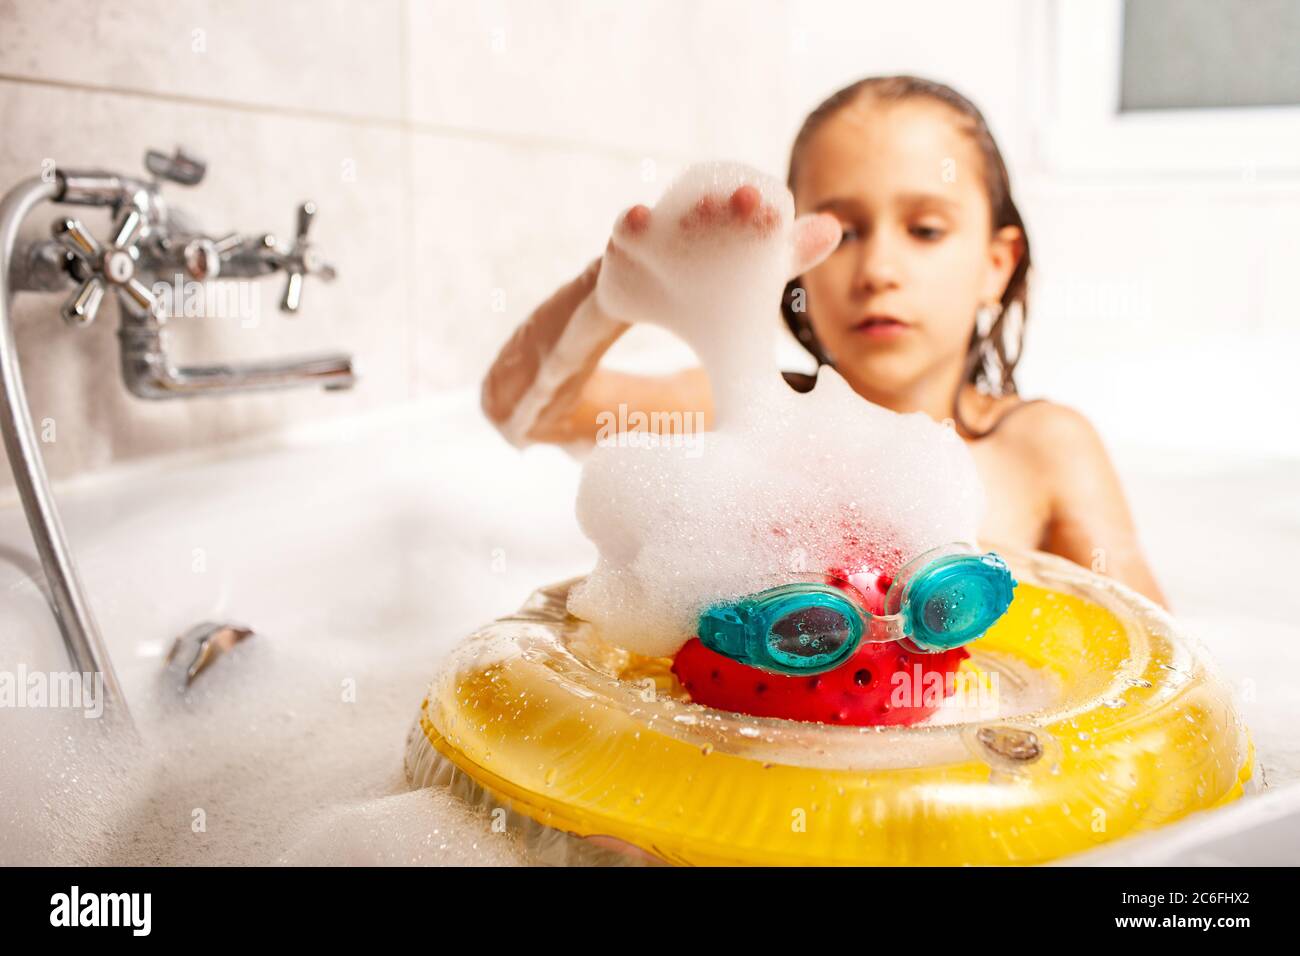 Девочка маленькая купается в ванной. Девочка с игрушками моется в ванной. Девочка моется в ванной с игрушками с игрушками. Девочка играется в ванной. Дочка мылась в душе